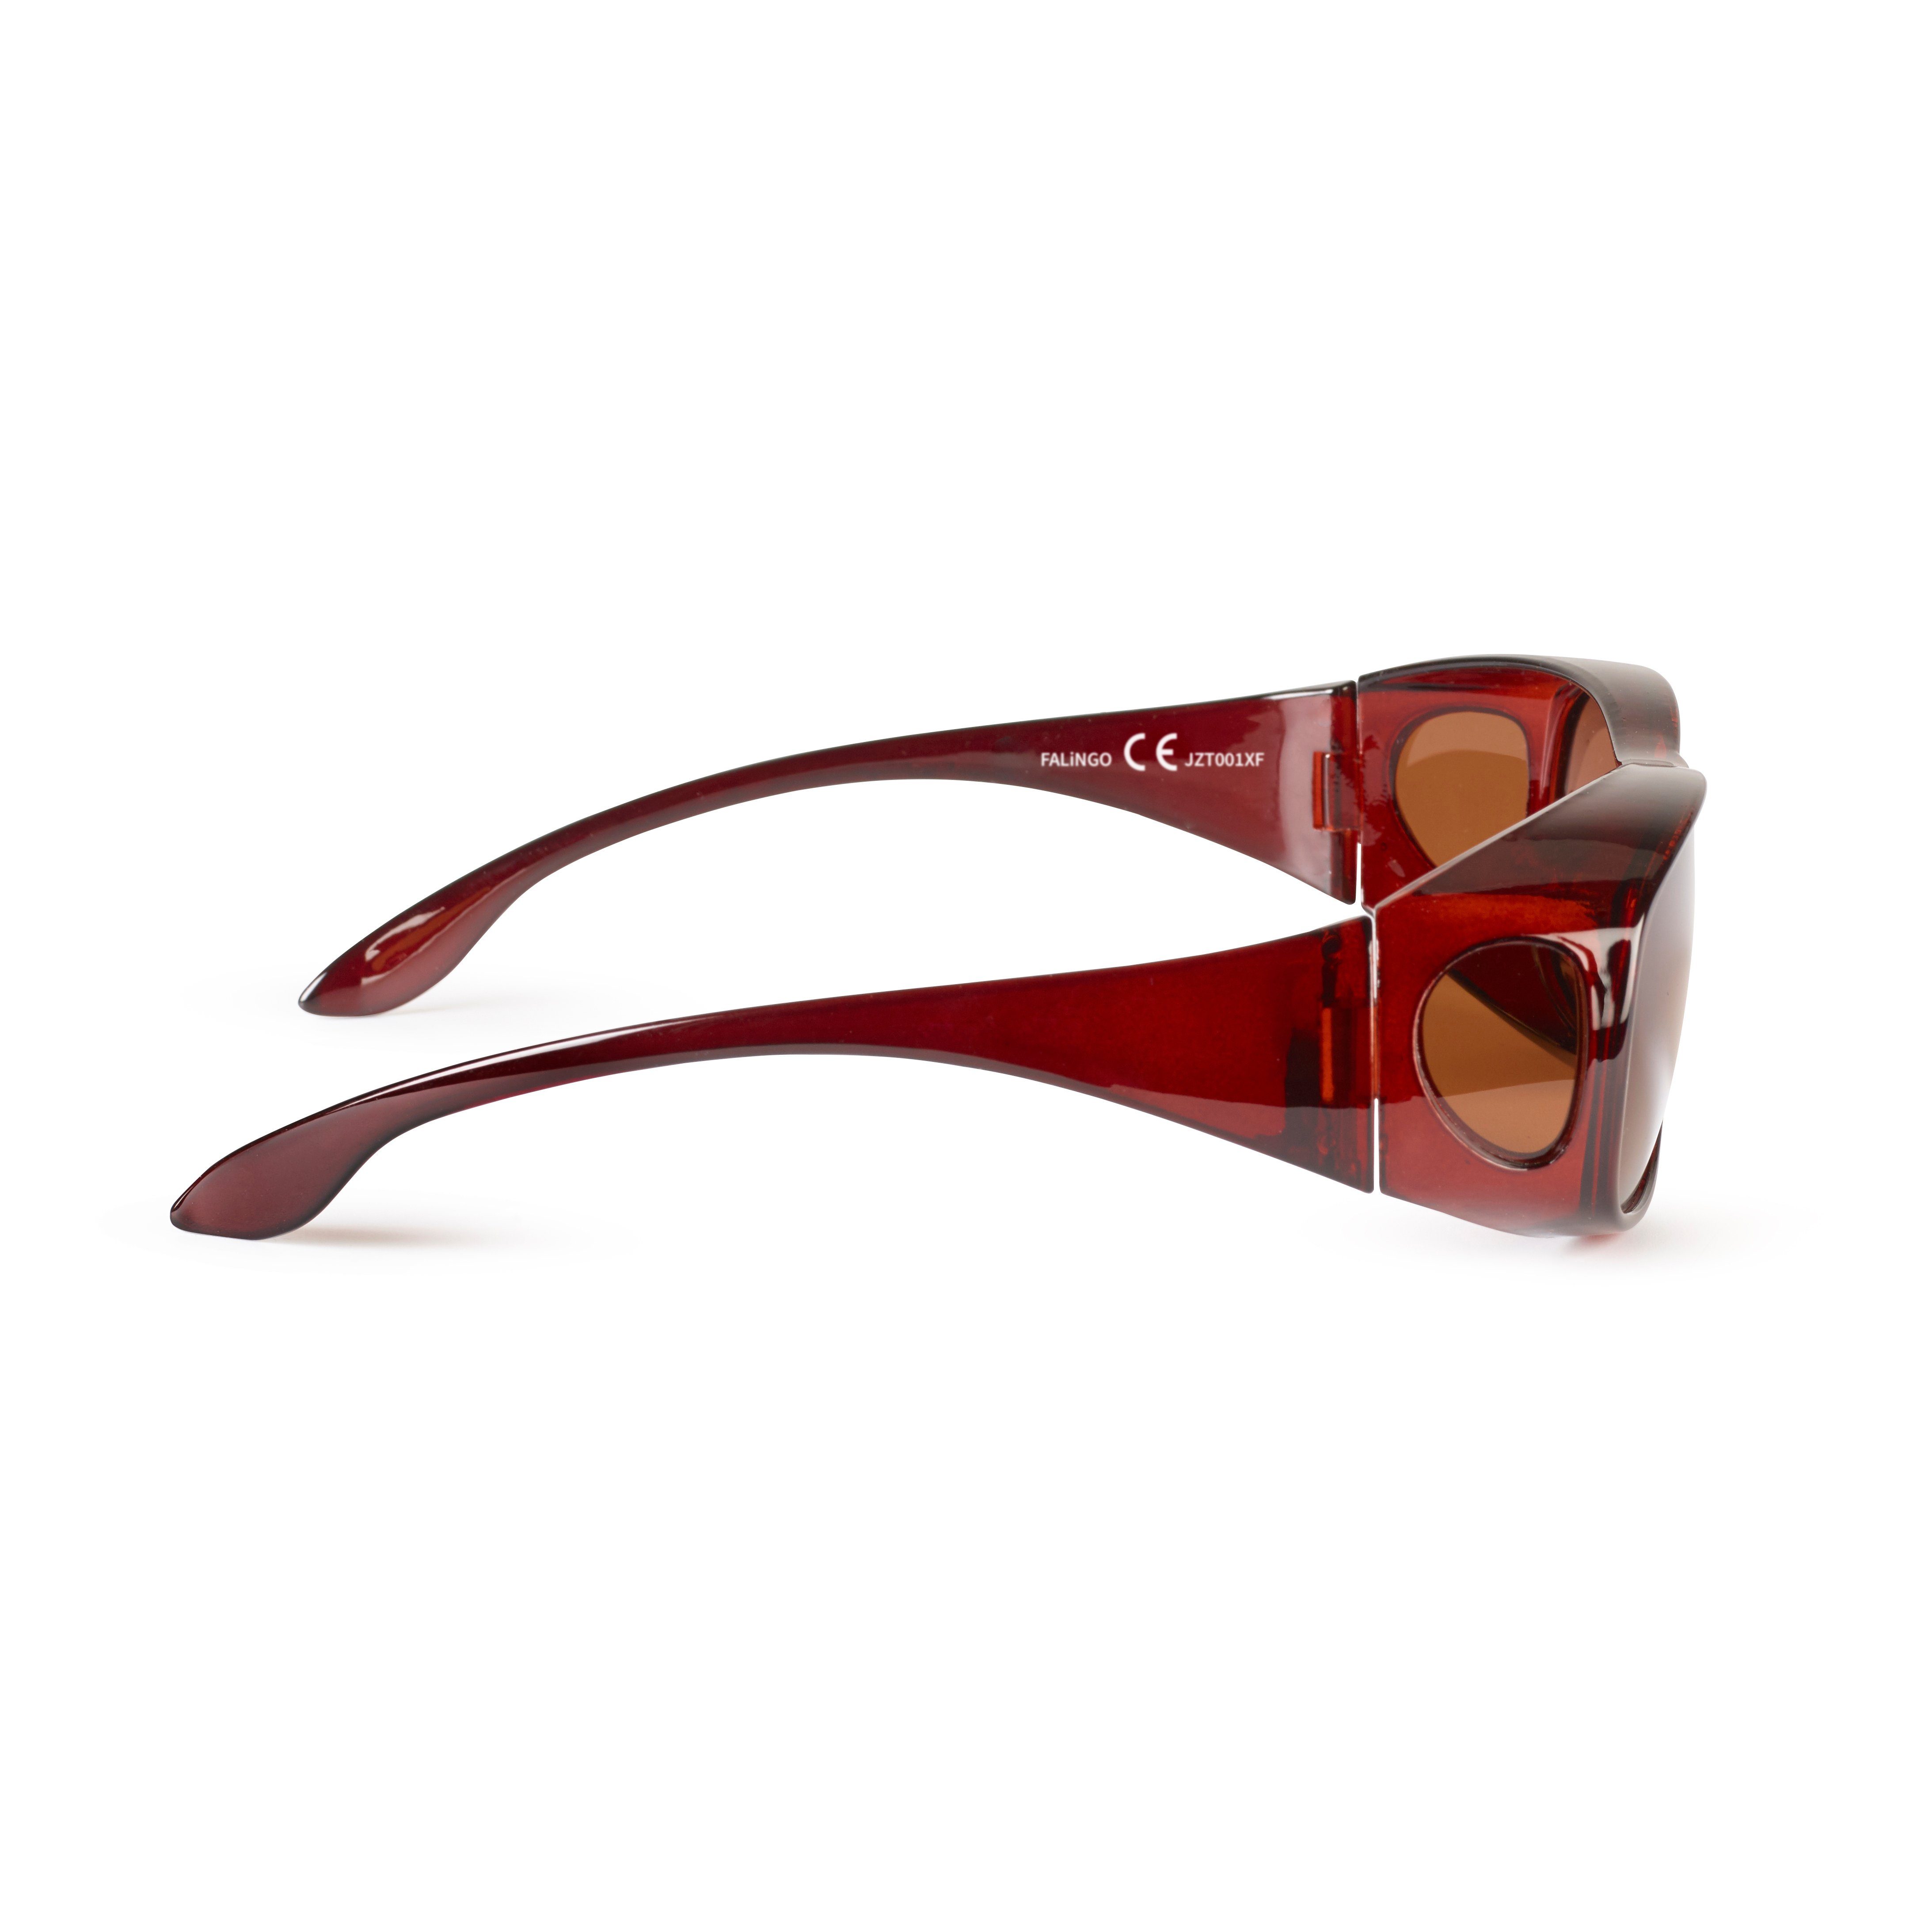 Braun EDITION Überzieh 400 CLASSIC FALINGO Sonnenüberbrille polarisiert Überziehbrille Überbrille Sonnenbrille Sonnenbrille UV